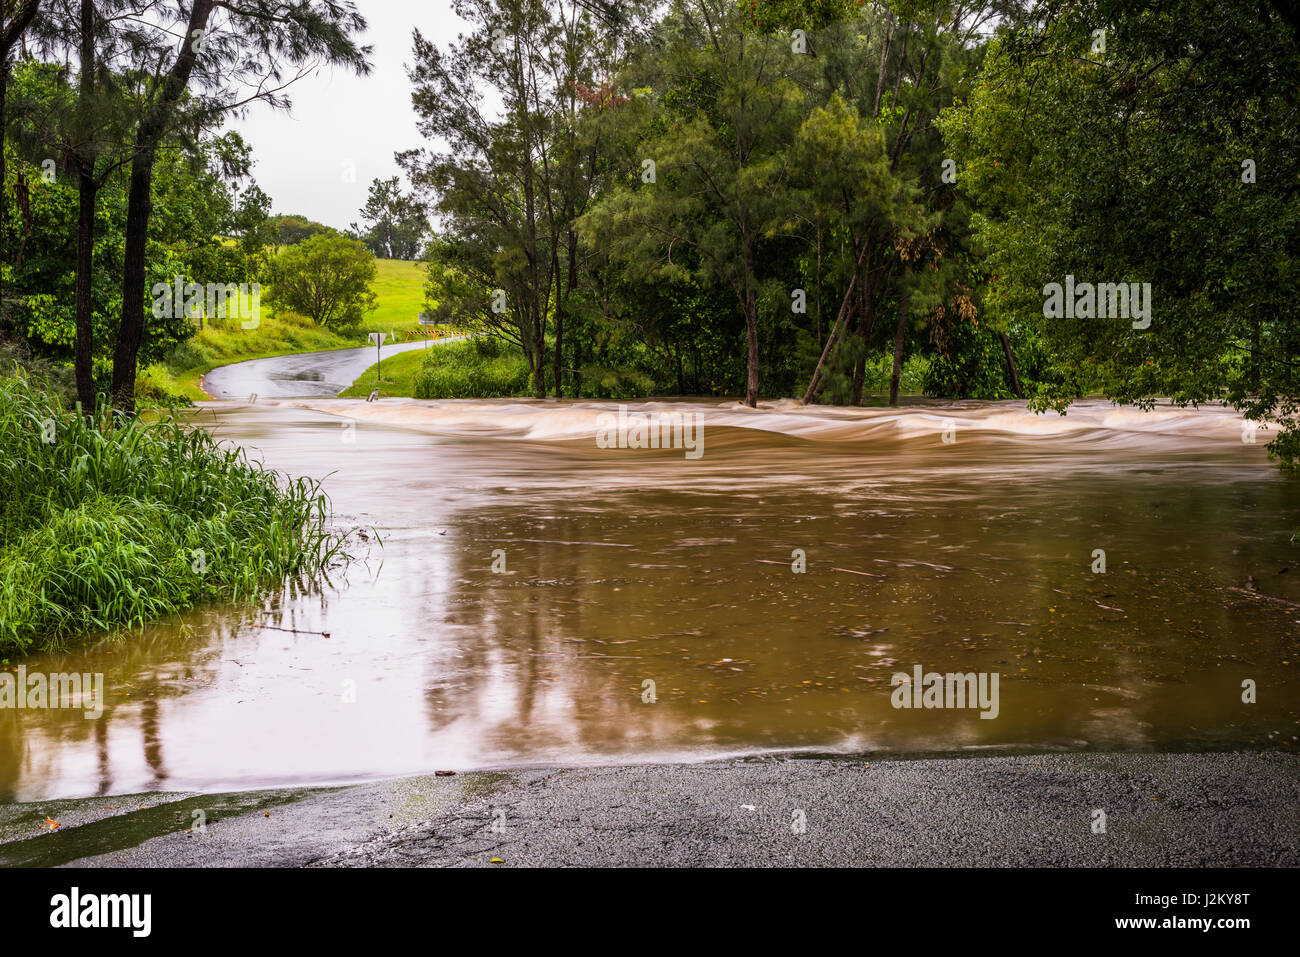 Suite à l'inondation de la rivière sever la pluie pendant l'ex Cyclone tropical Marcia dans le Queensland, en Australie. Banque D'Images